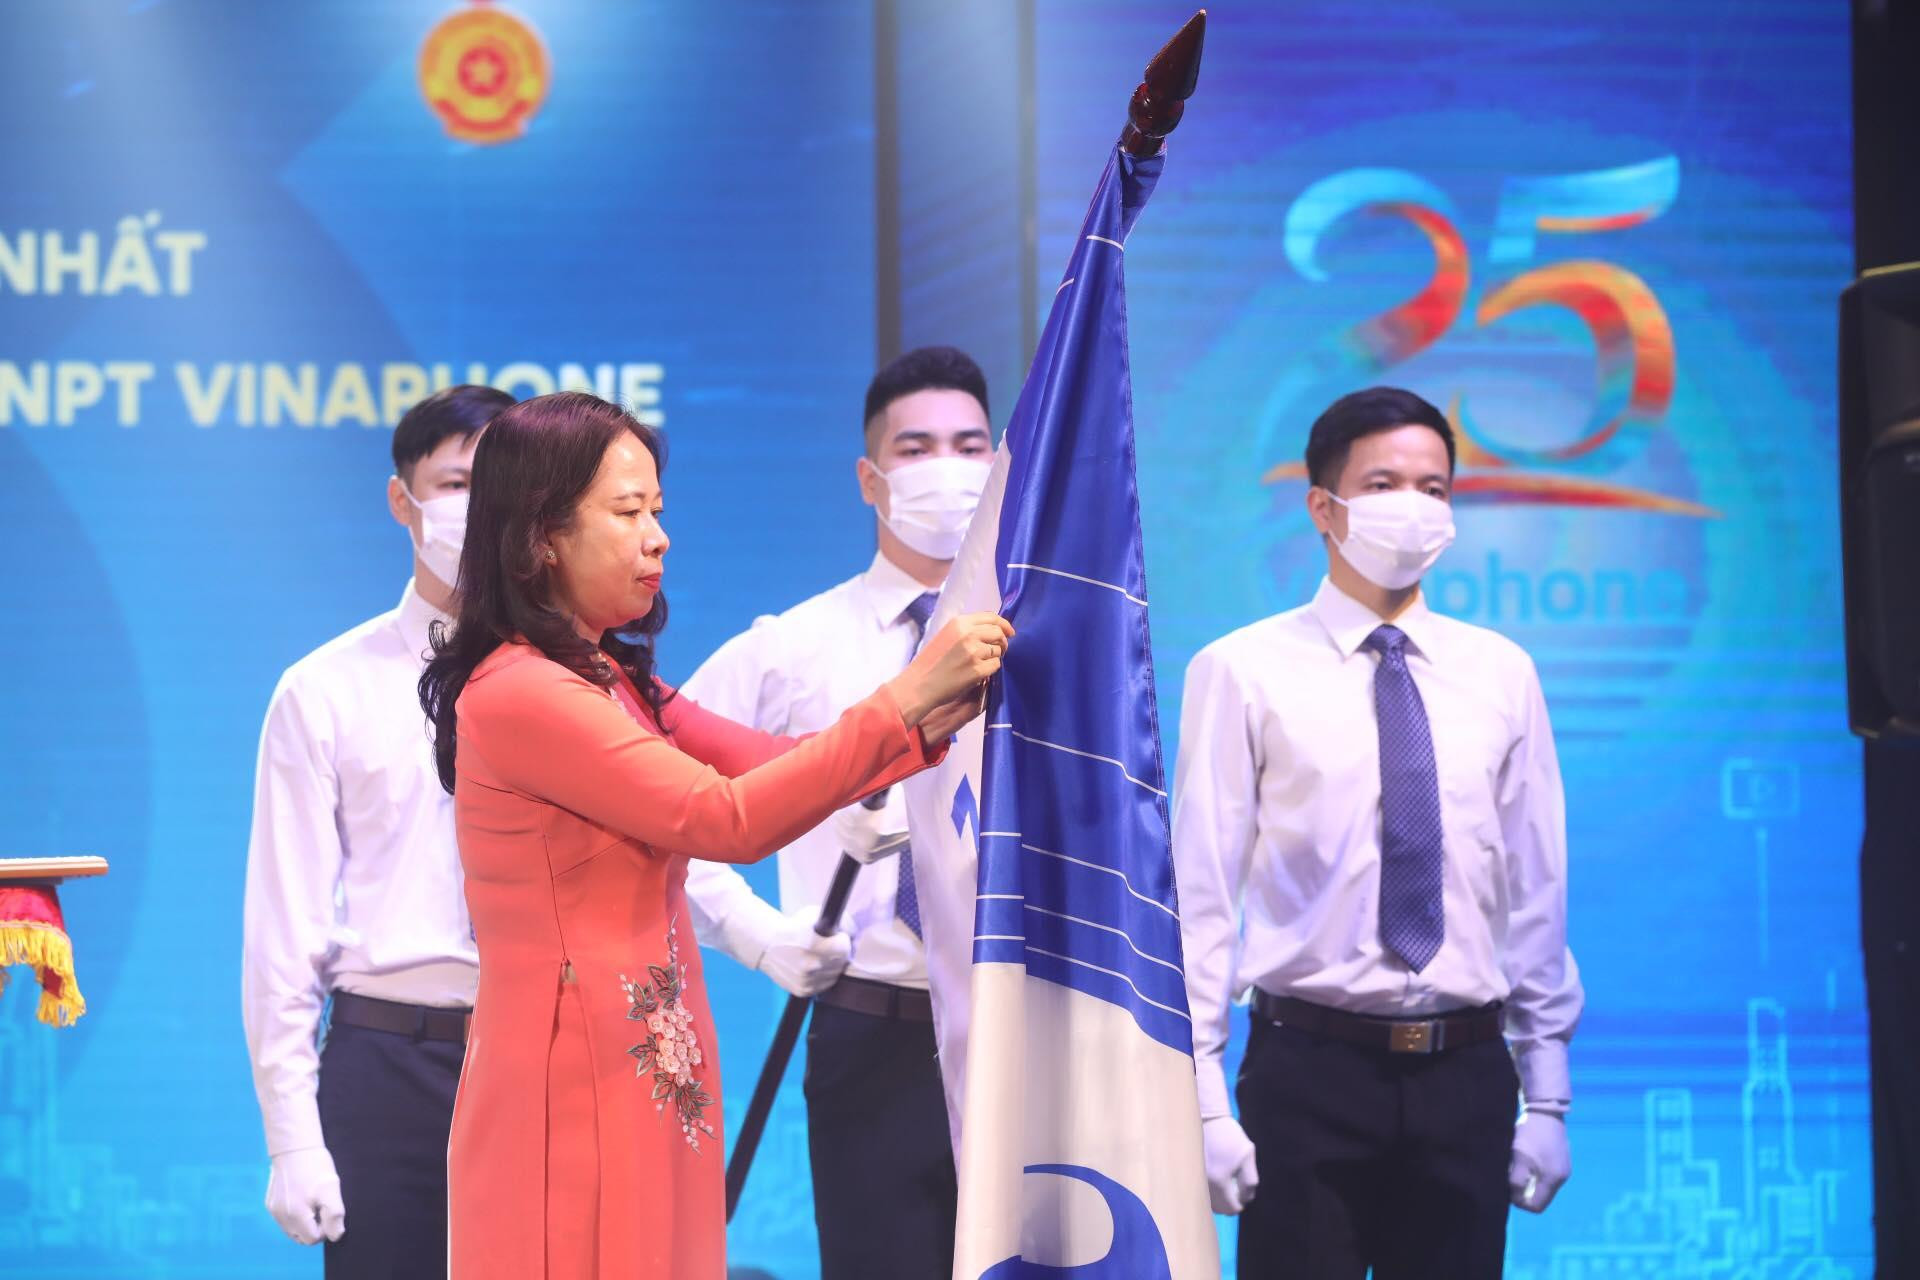 Ủy viên Ban chấp hành Trung ương Đảng, Phó Chủ tịch nước Võ Thị Ánh Xuân trao tặng Huân chương Lao động hạng Nhất cho VNPT VinaPhone. (Ảnh: Minh Quyết/TTXVN)